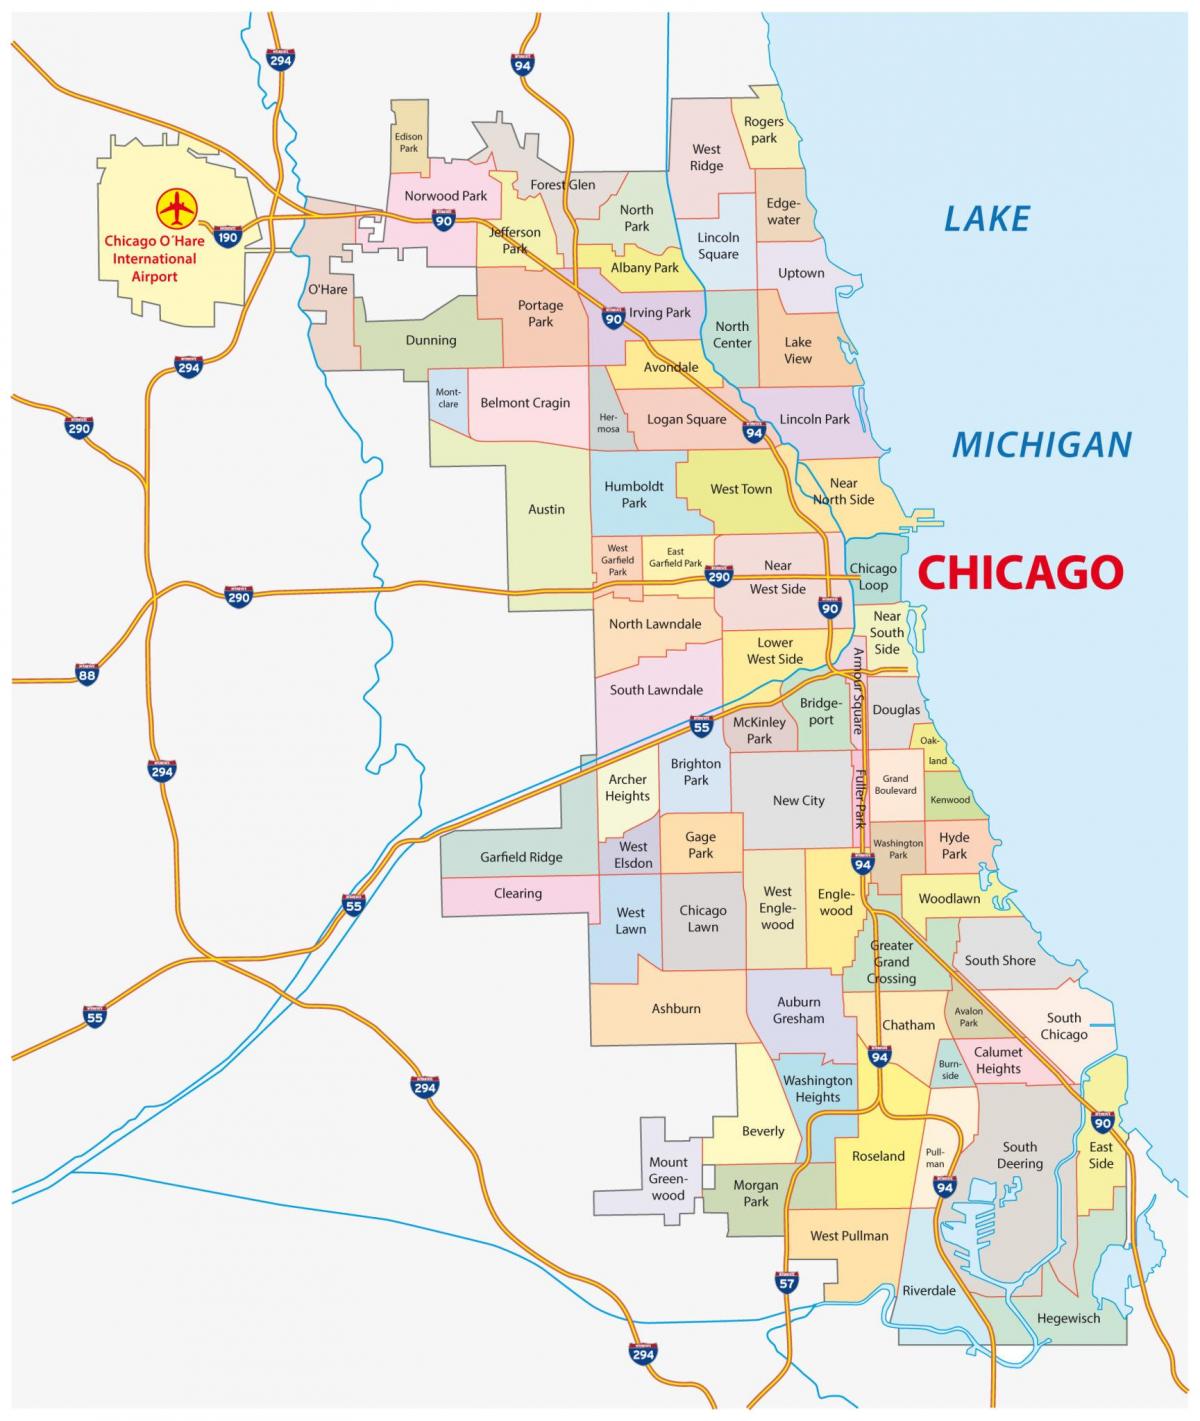 Plan des quartiers de Chicago